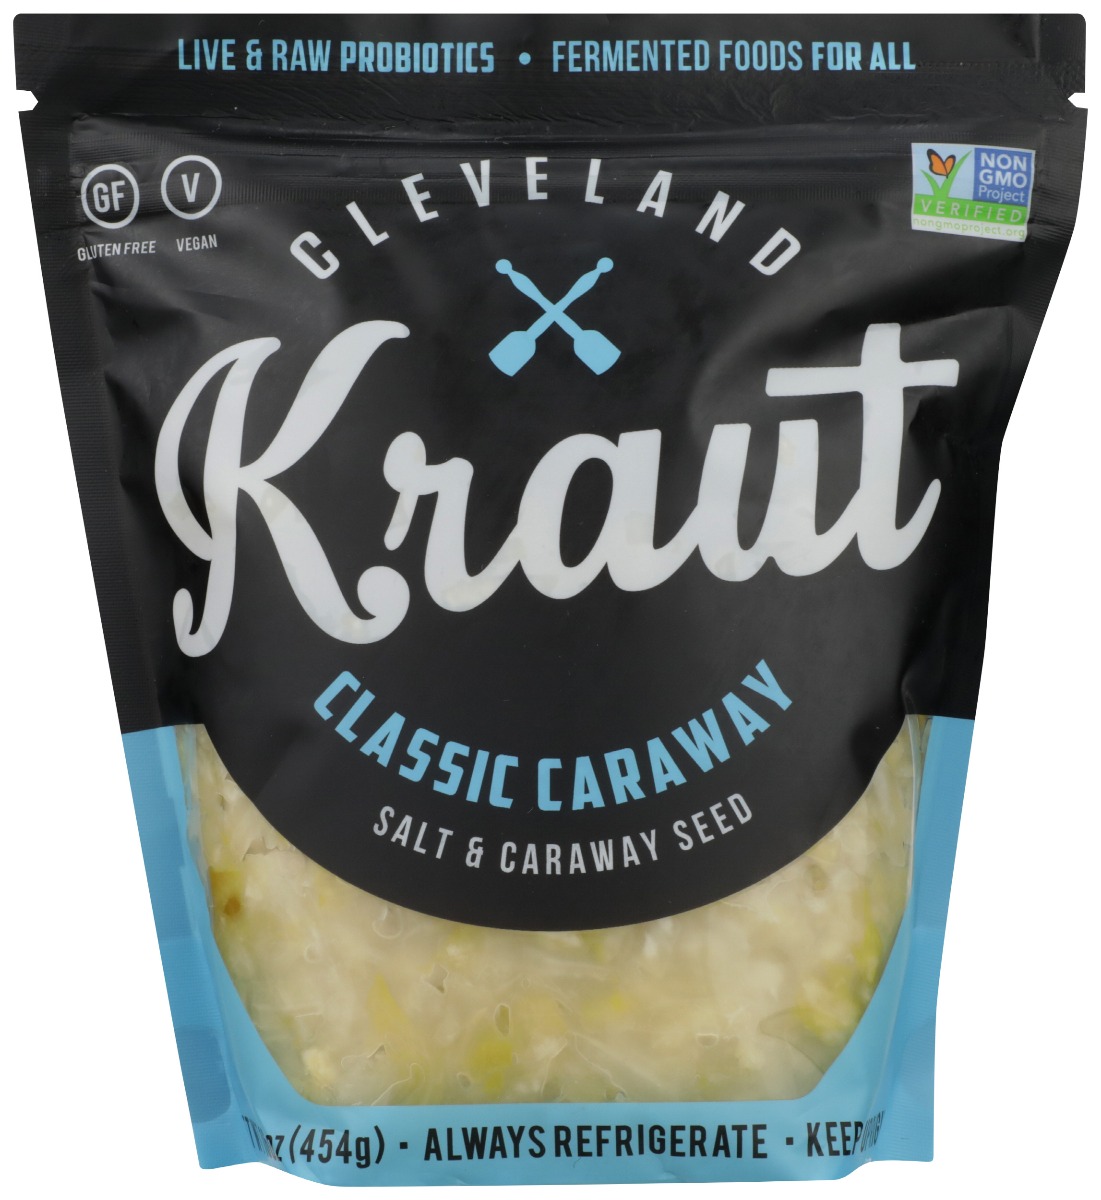 CLEVELAND KRAUT: Classic Caraway Sauerkraut, 16 oz - 0869982000008